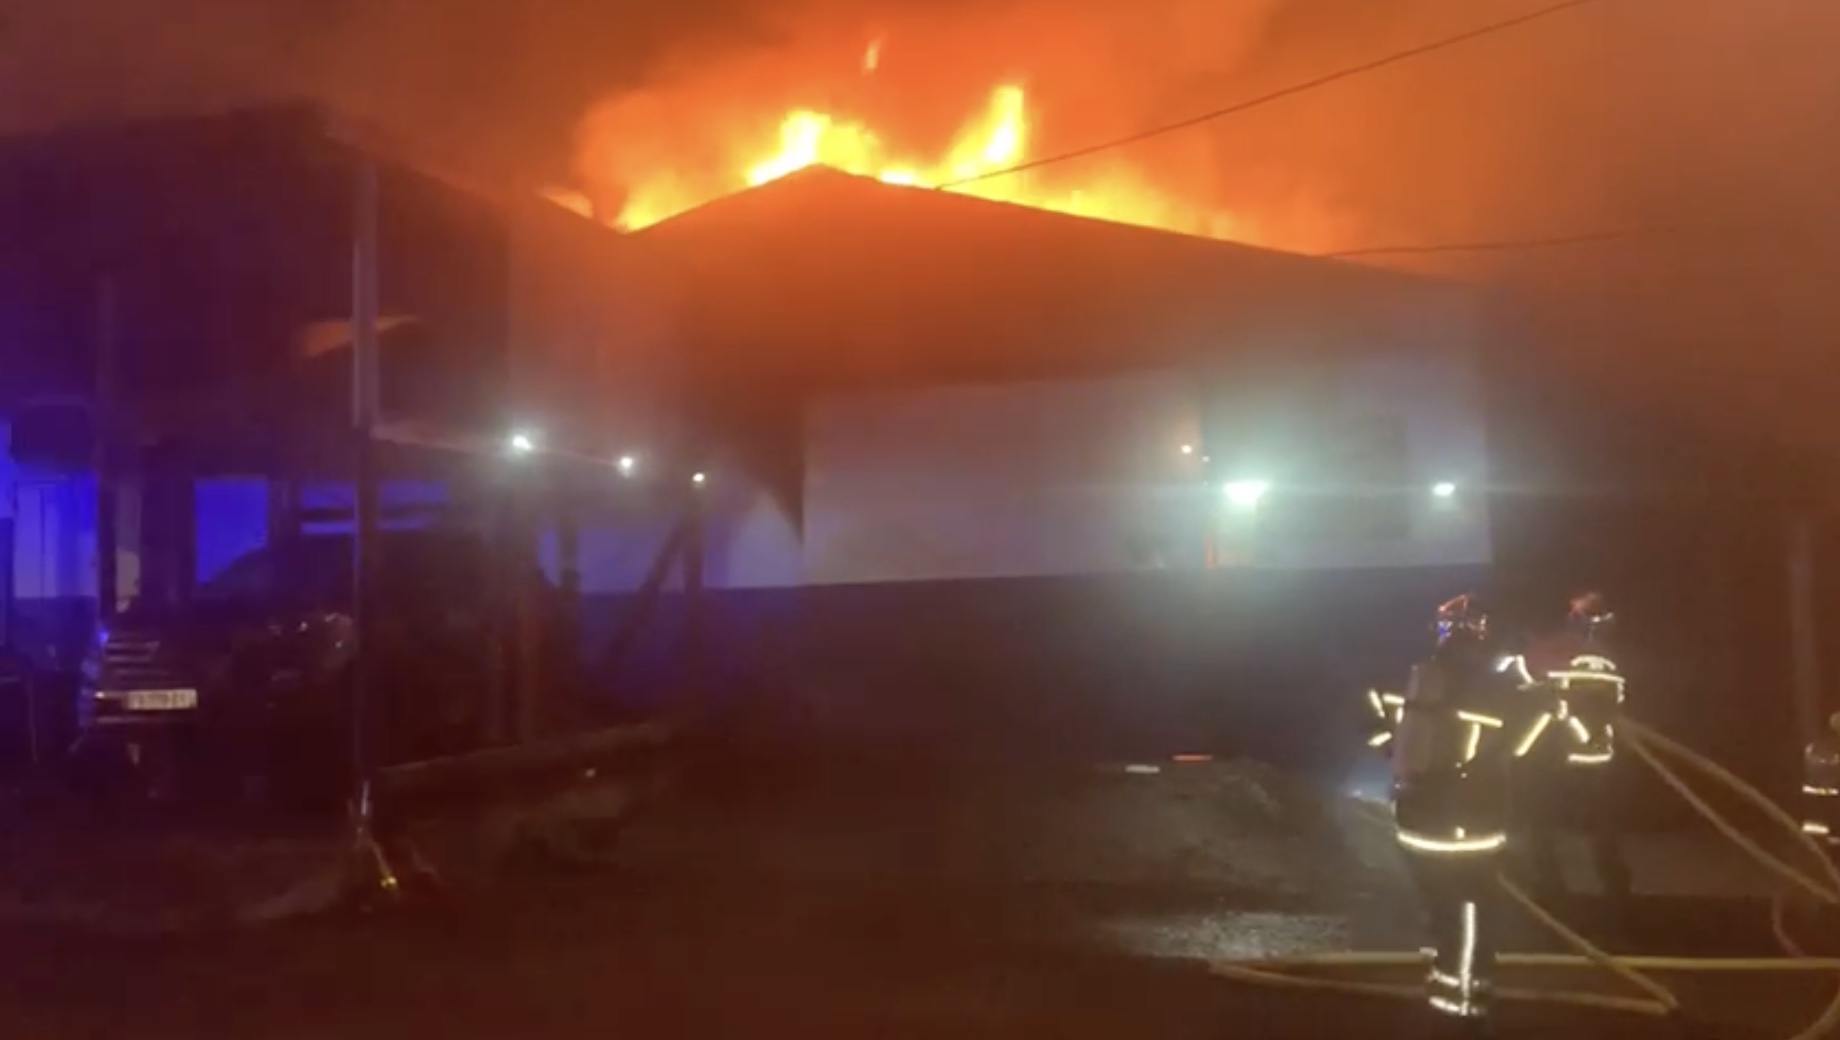     [VIDEO] Un garage en proie aux flammes à Capesterre-Belle-Eau

